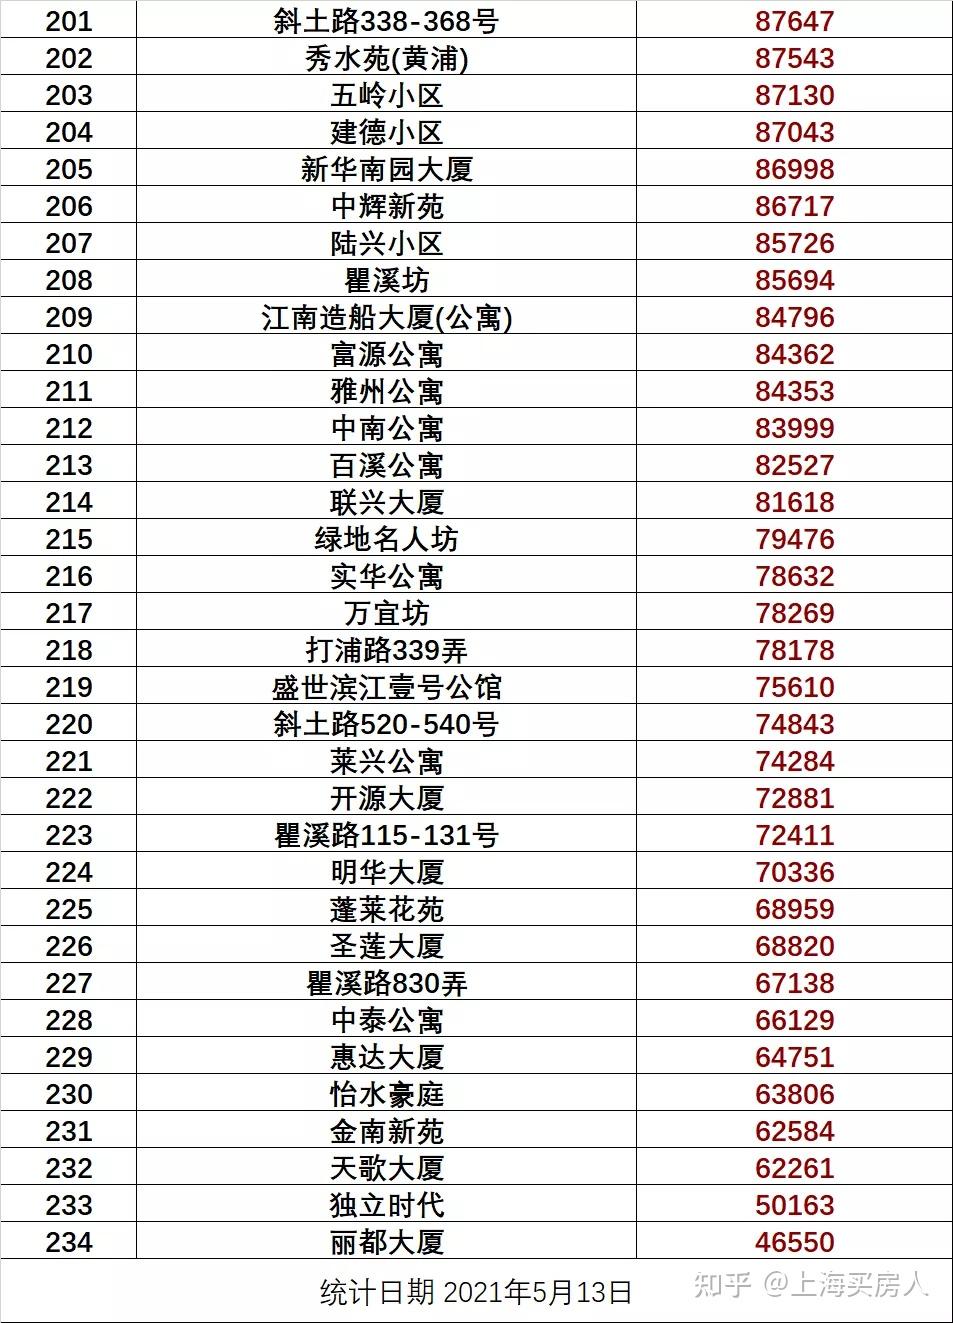 上海5388个小区最新房价出炉你家现在房价多少